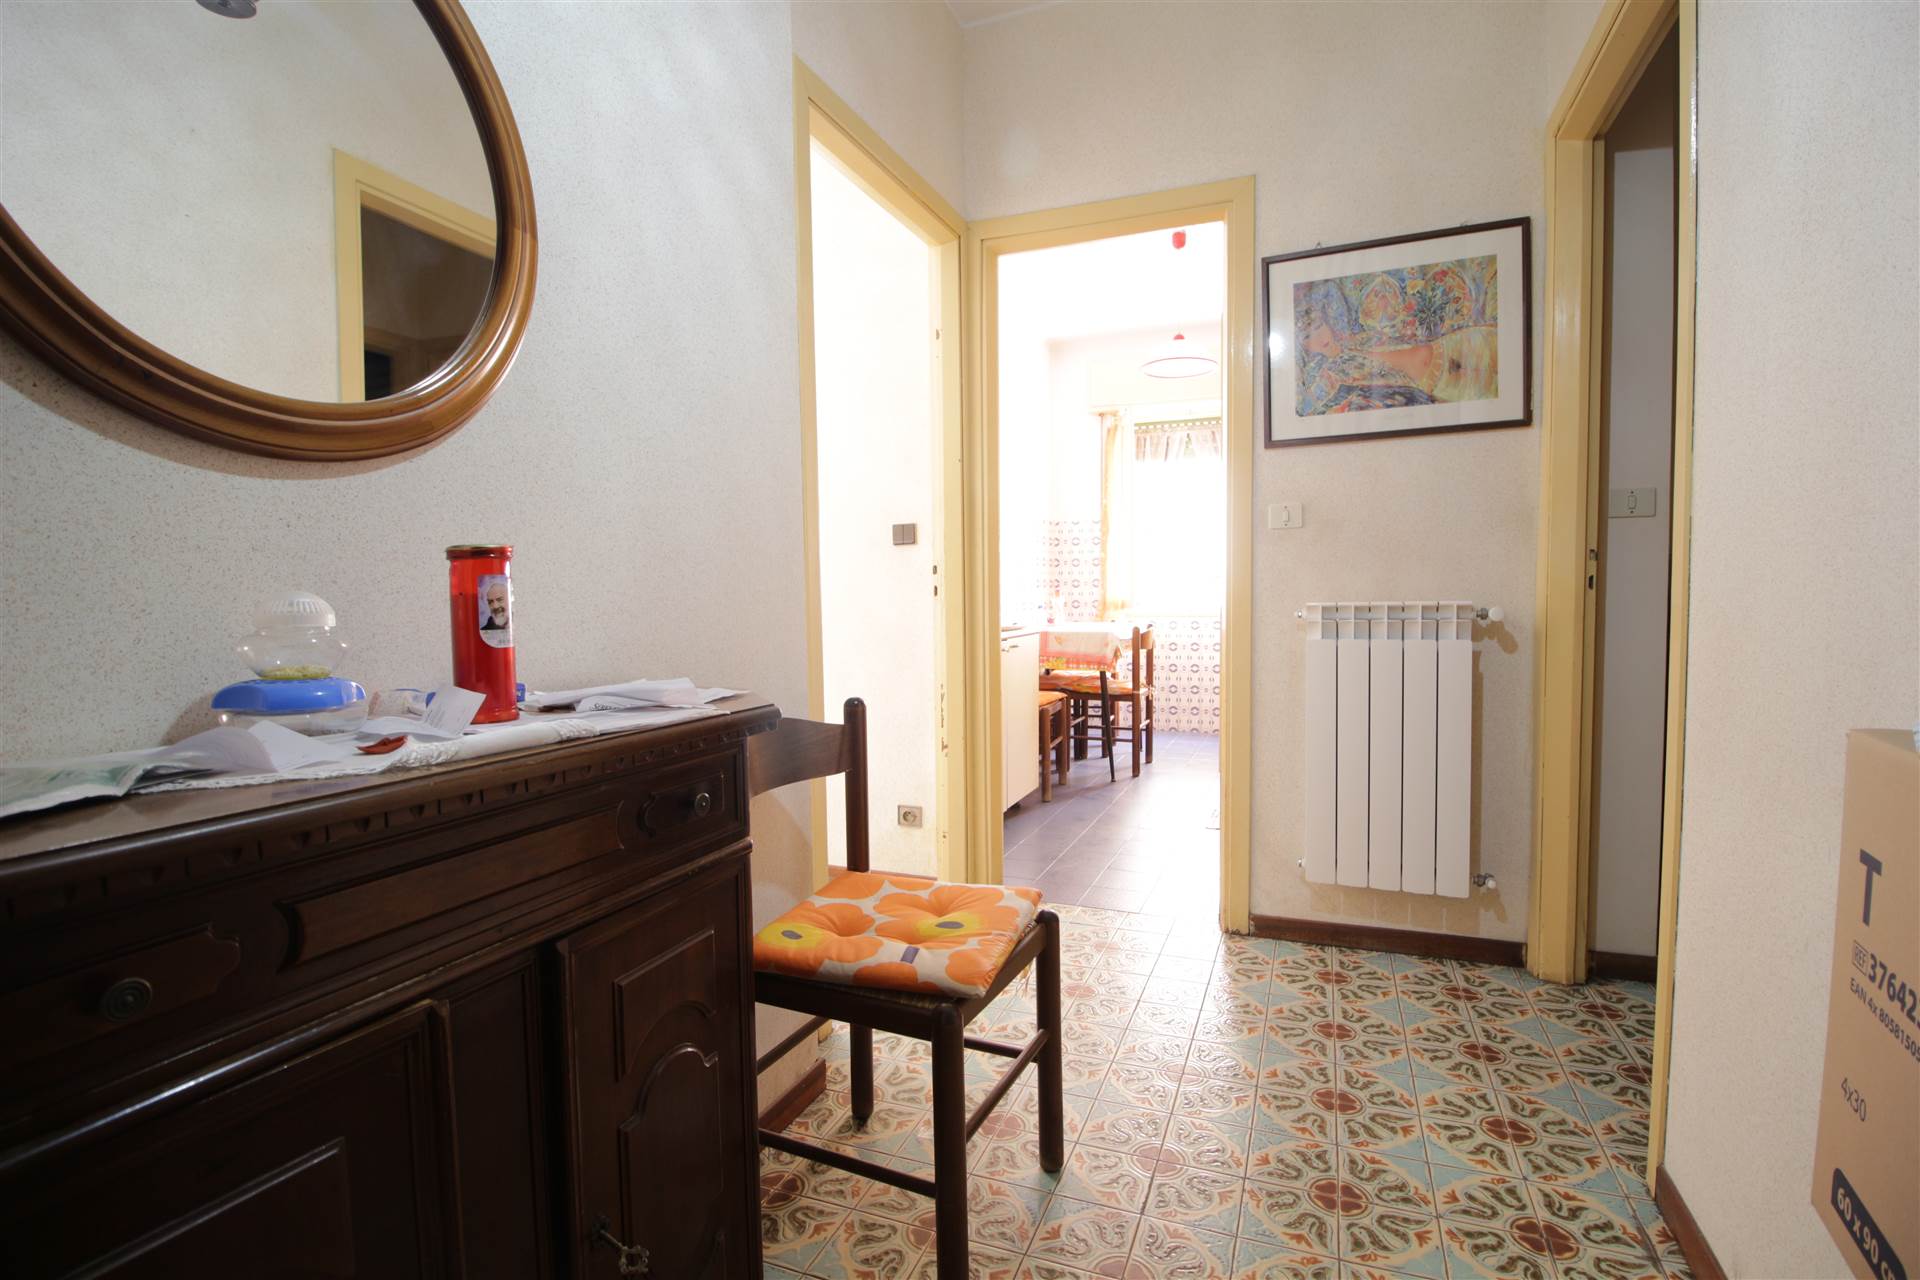 In vendita a Ventimiglia, in via Carso, proponiamo un luminoso appartamento di 75 mq al secondo piano. L'immobile è composto da un bagno, due camere 